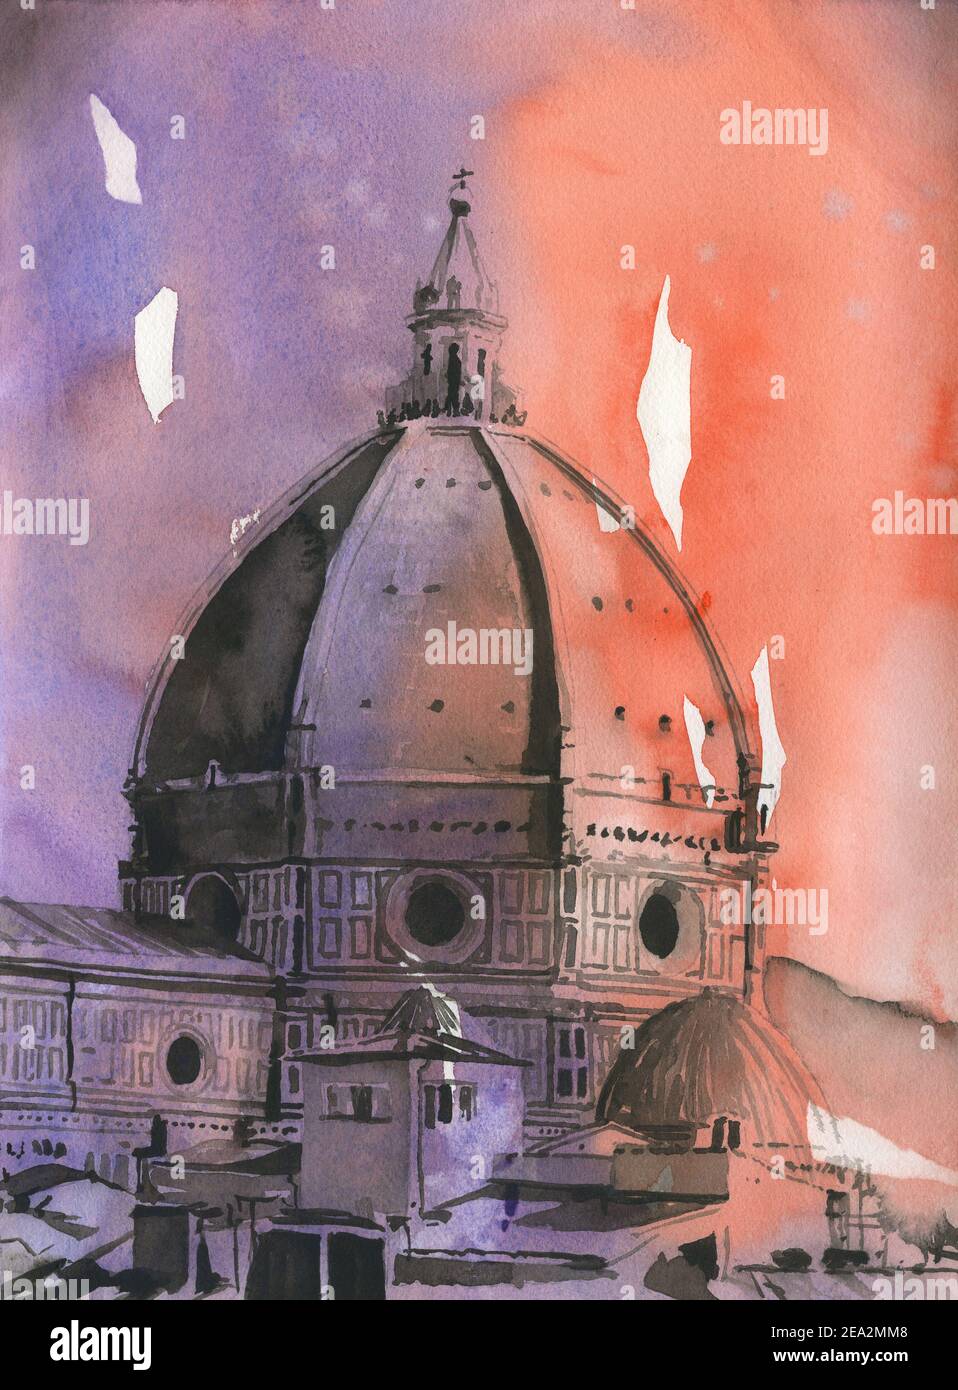 Le dôme de Brunelleschi sur le Duomo de Florence - Italie. Peinture aquarelle Florence Duomo Banque D'Images